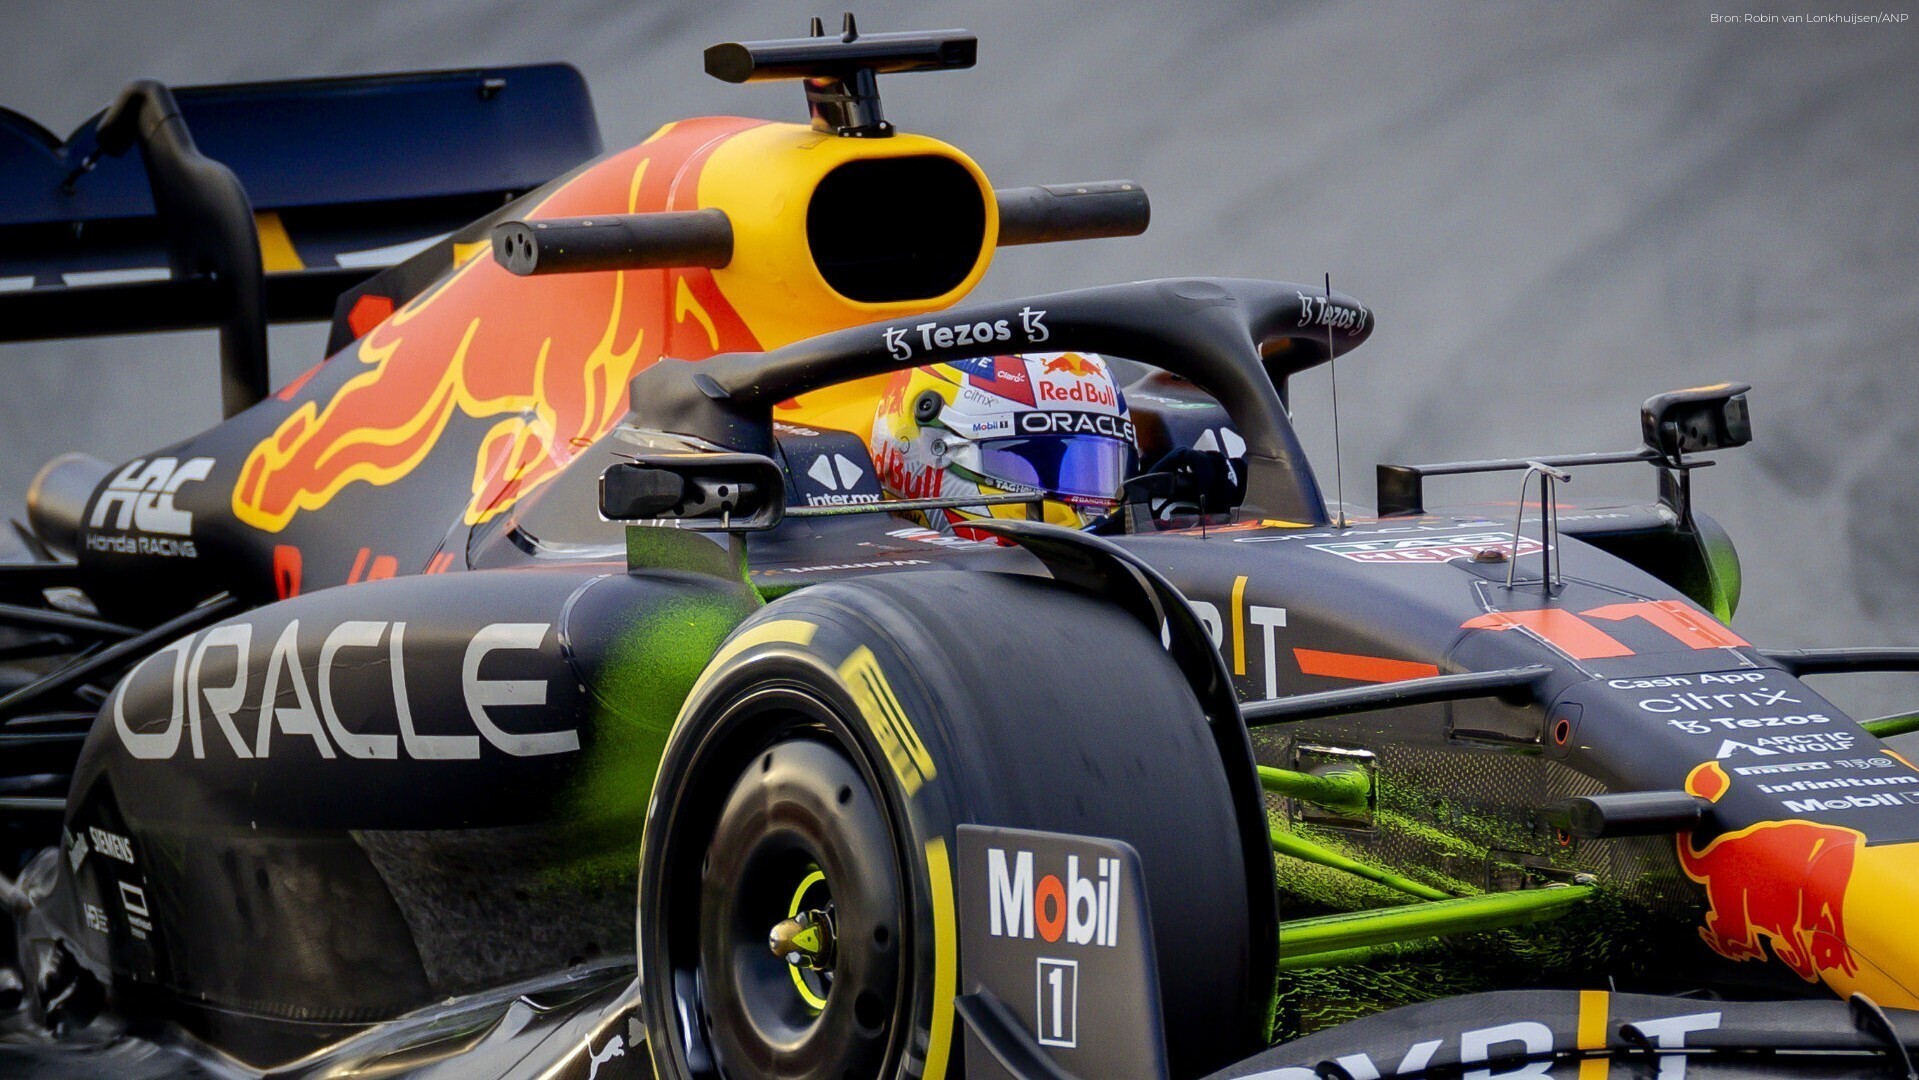 Formule 1 Gp Van Japan Live Op Tv En Online: Hoe Laat Zie Je De Race?